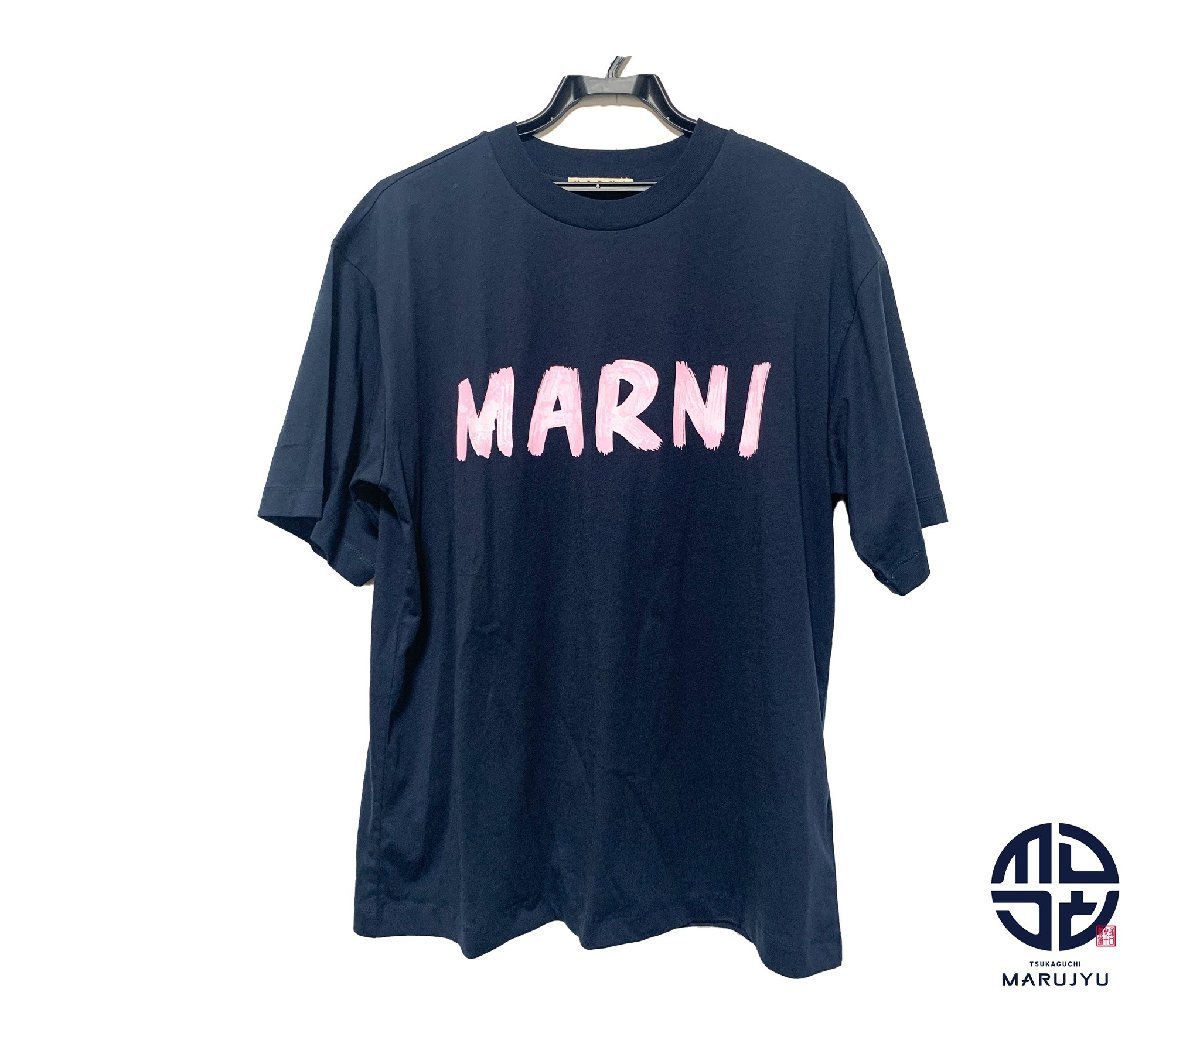 MARNI マルニ ロゴ Tシャツ THJET49EPH 半袖 サイズ38 レディース 服 アパレル